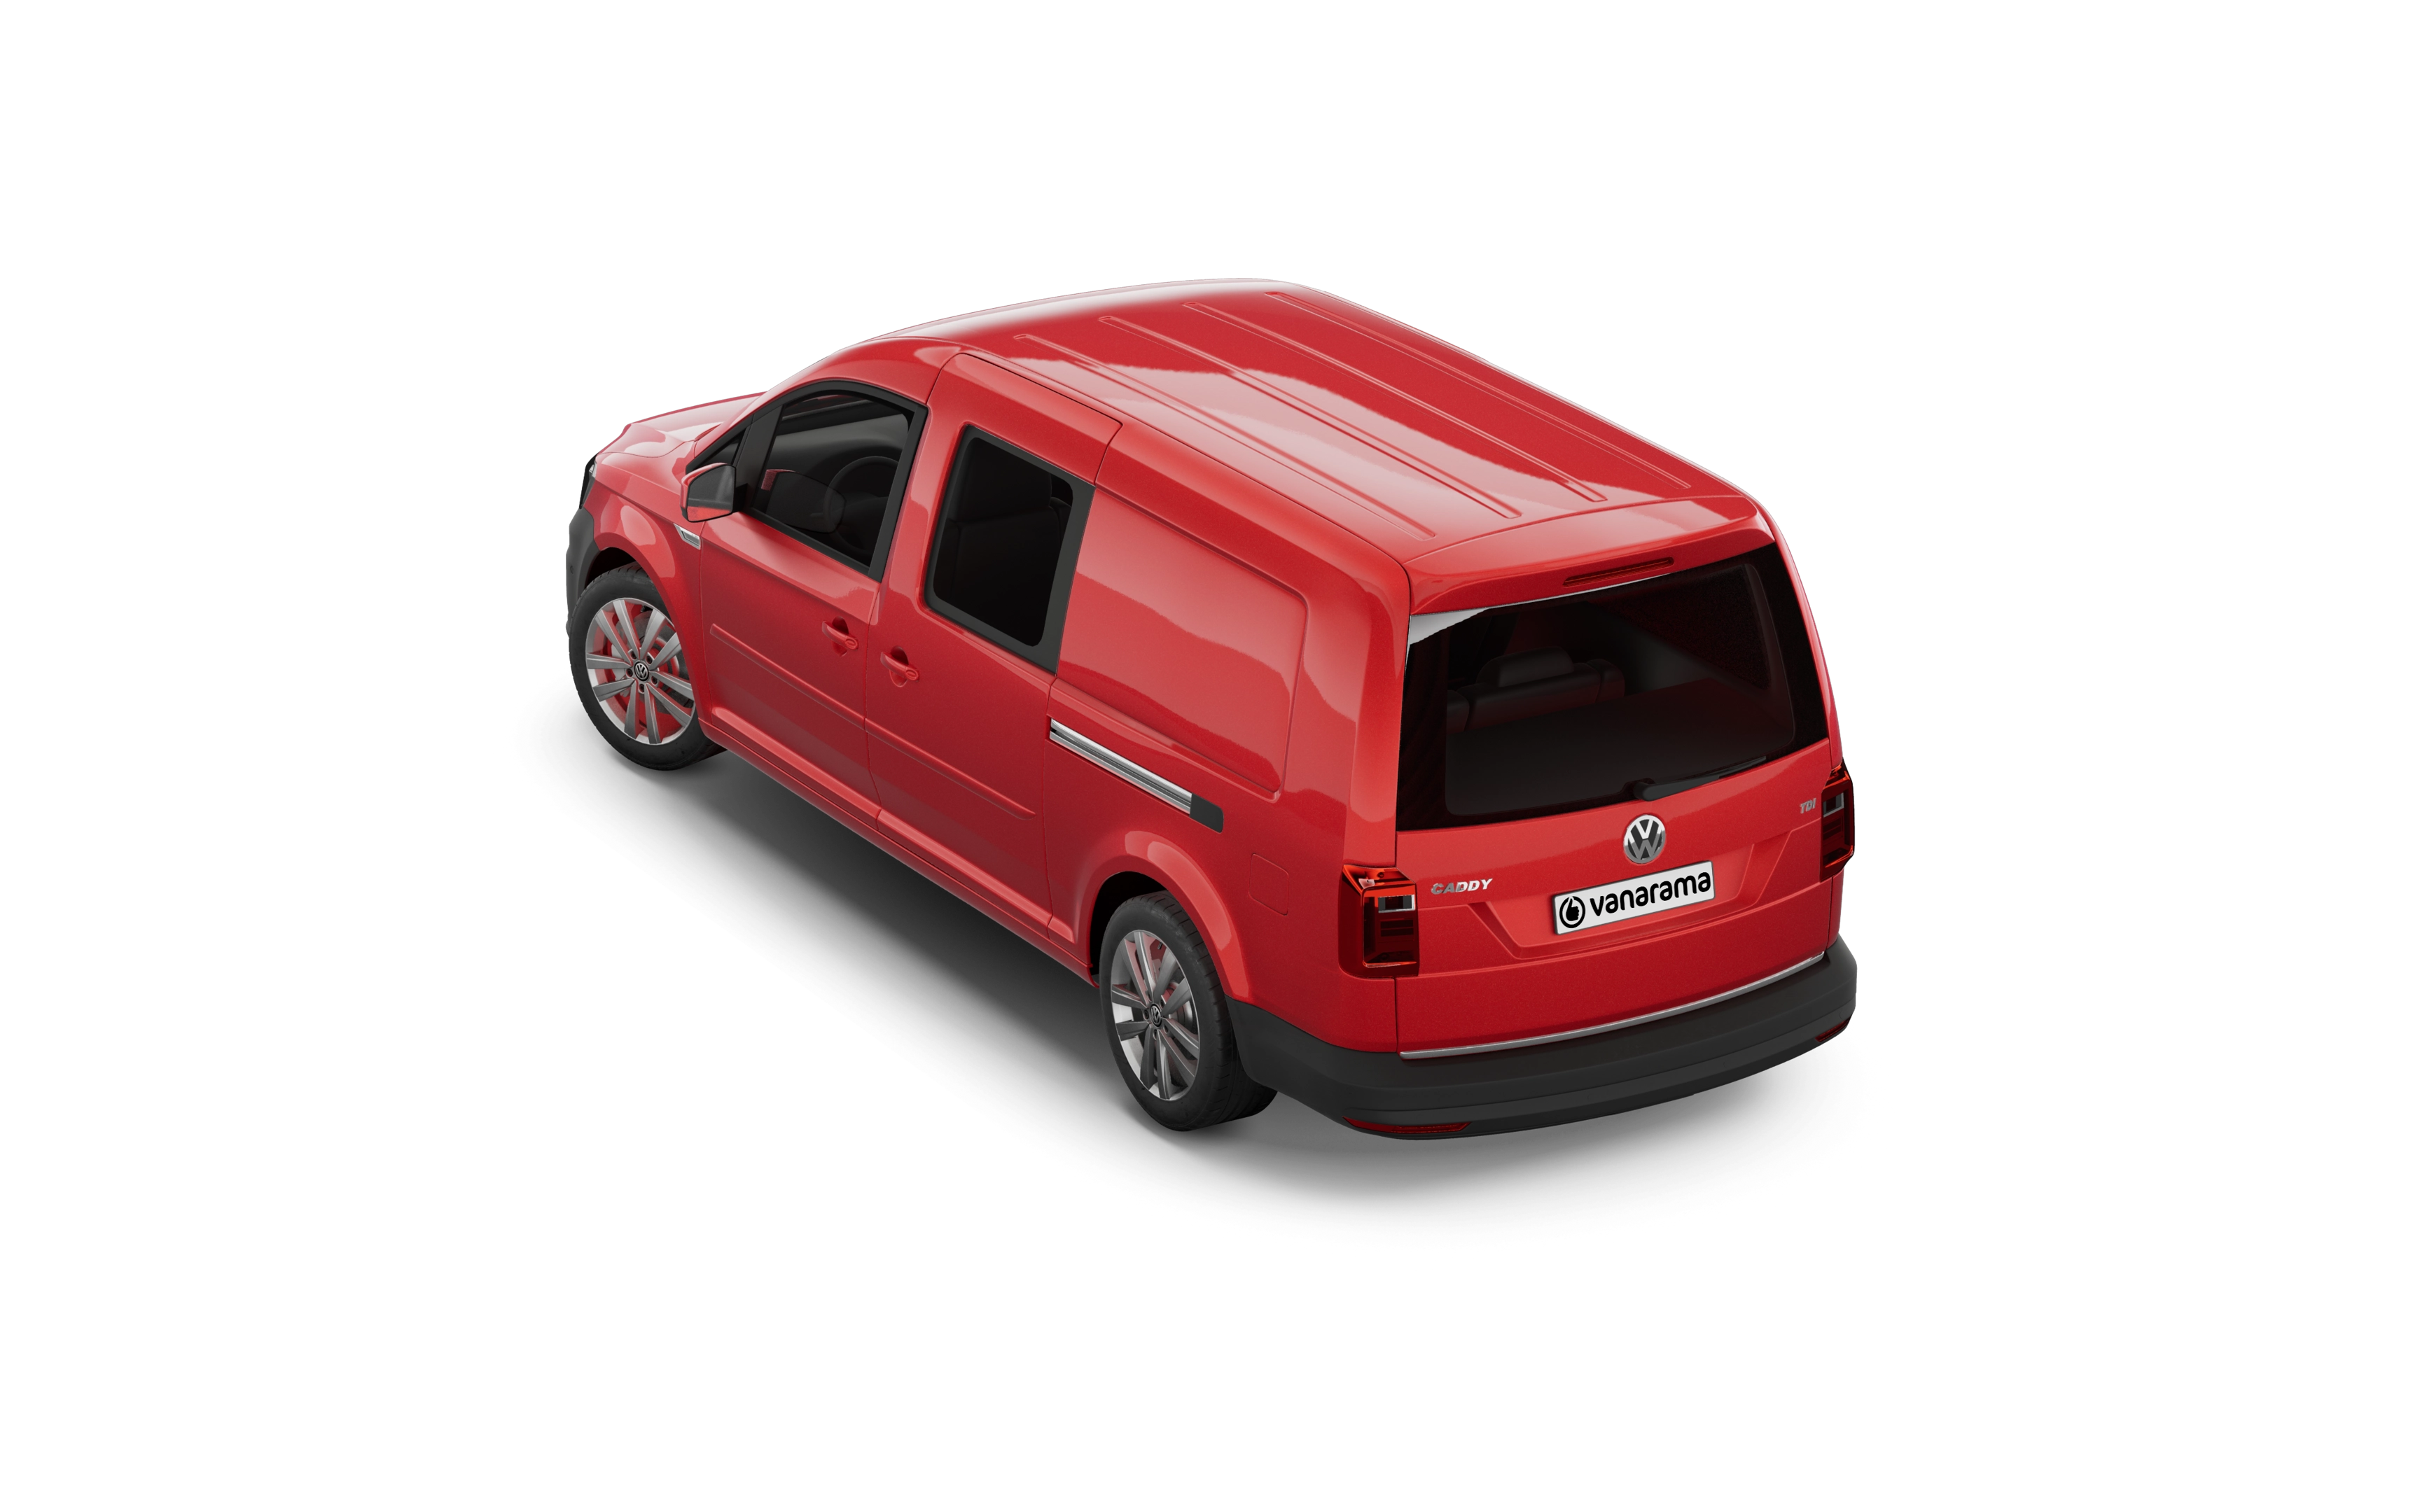 Volkswagen caddy maxi estate 2.0 tdi life 5 doors